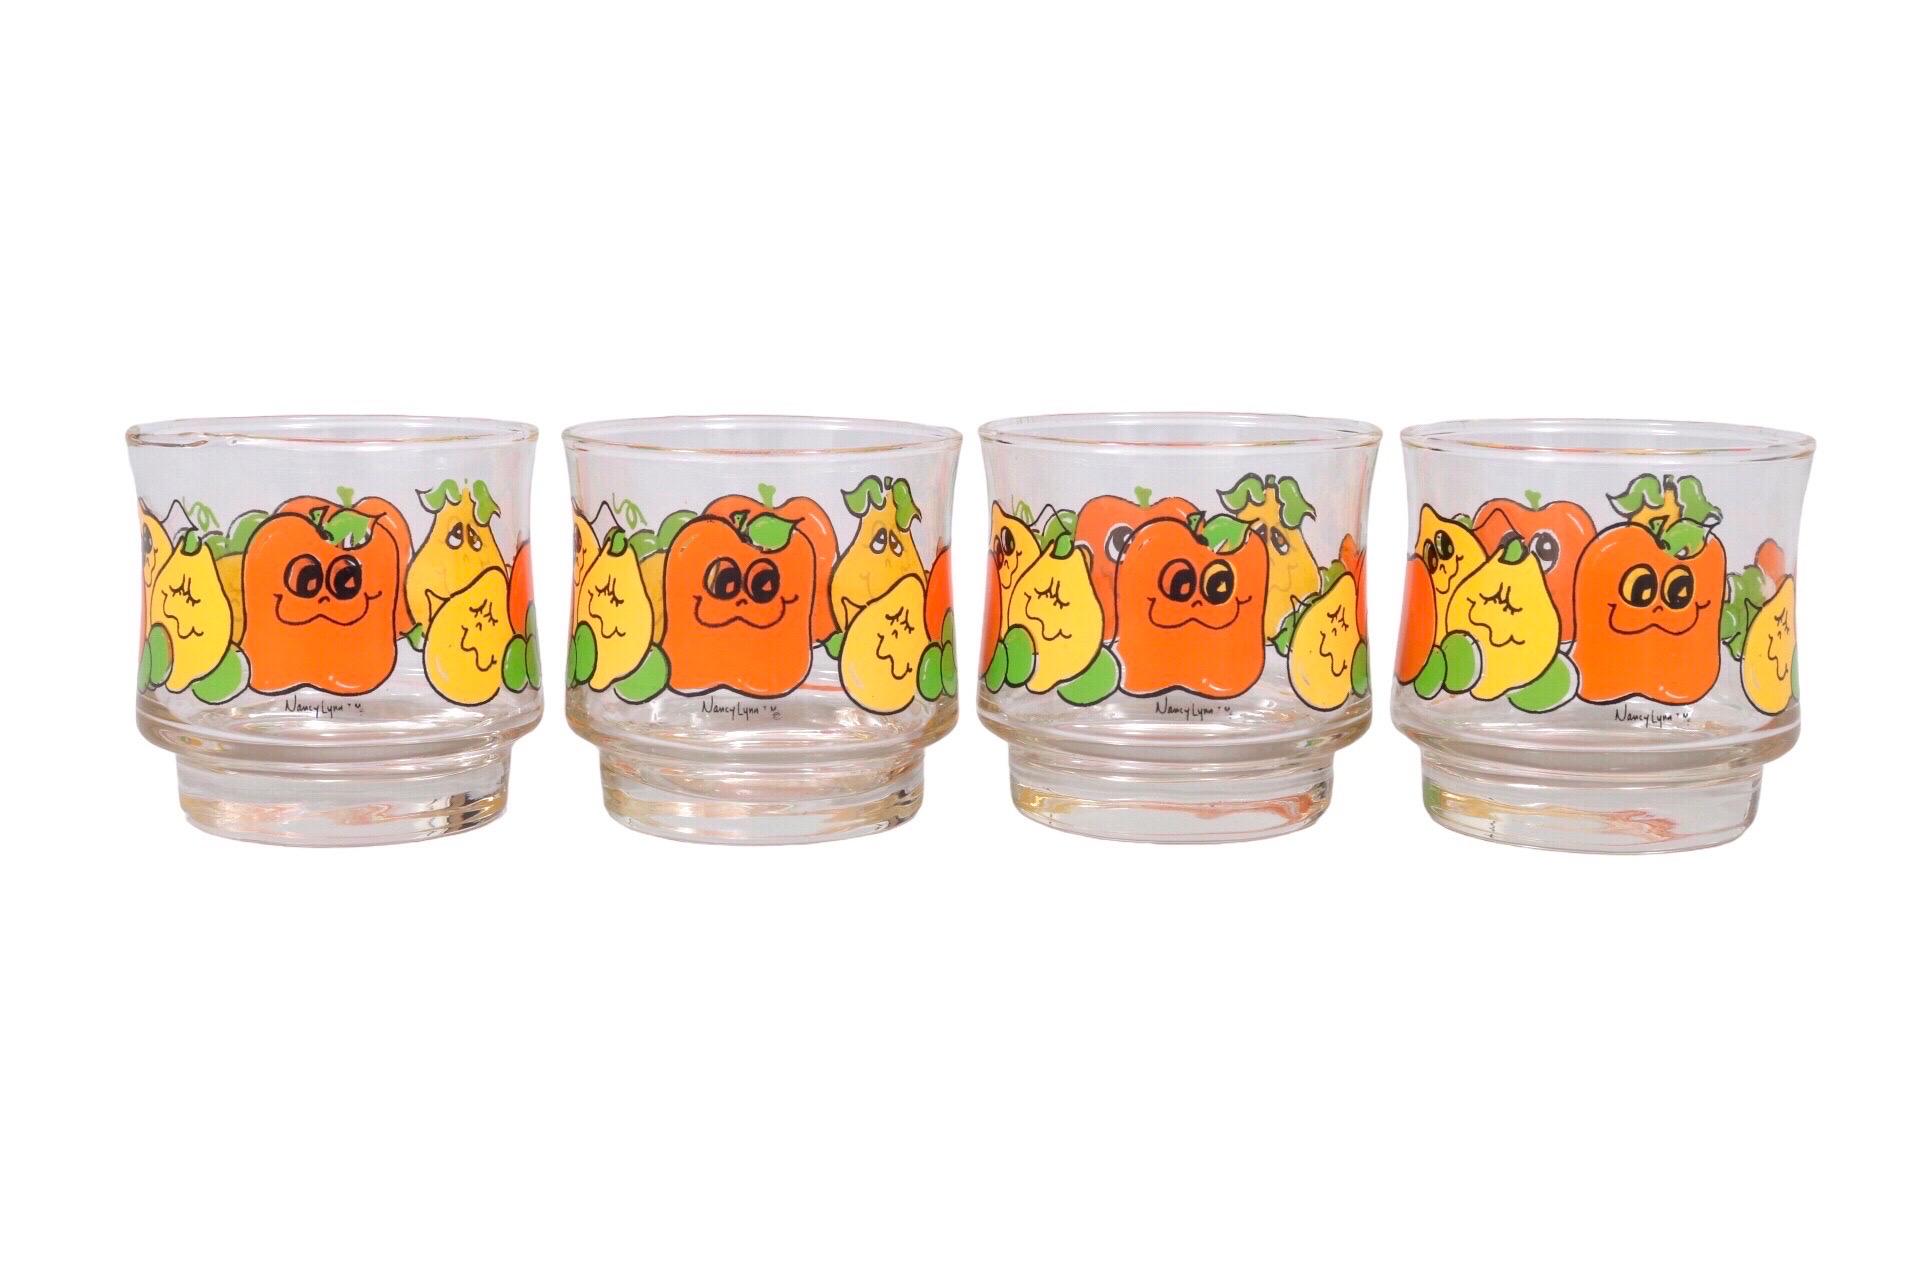 Un ensemble de quatre verres Nancy Lynn pour Anchor Hocking. Les verres incurvés concaves pour une meilleure prise en main sont décorés de fruits stylisés verts, jaunes et orange. Les citrons et les pommes ont des visages souriants de dessins